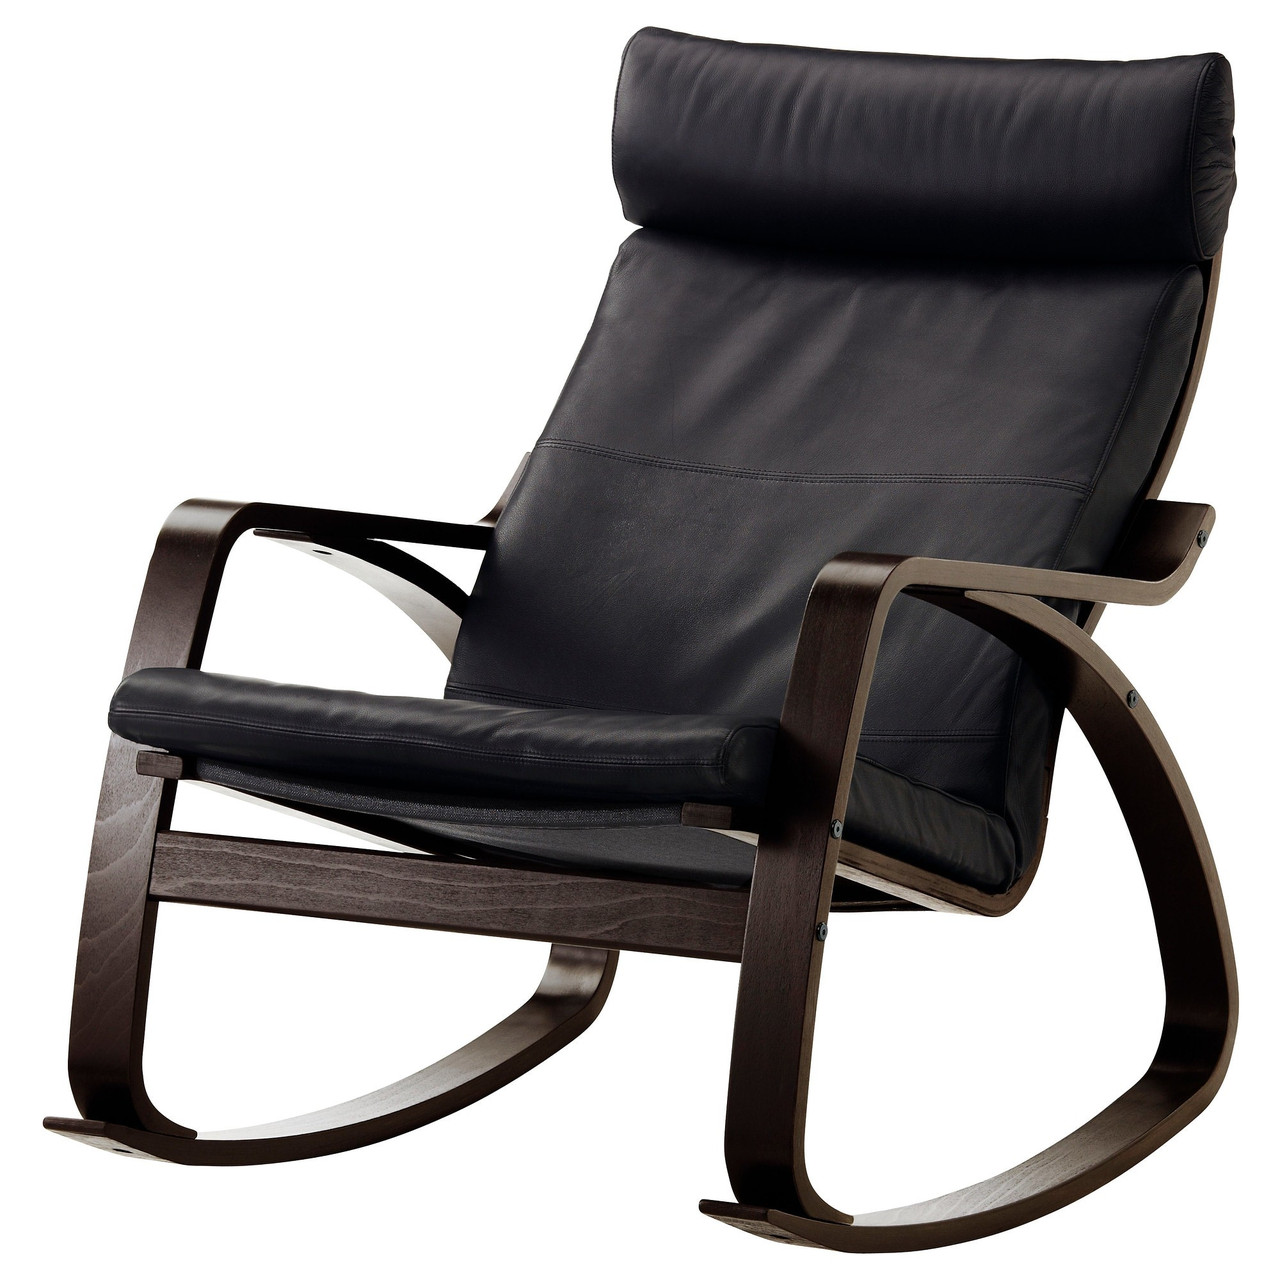 Кресло-качалка ПОЭНГ коричневый Смидиг черный ИКЕА, IKEA